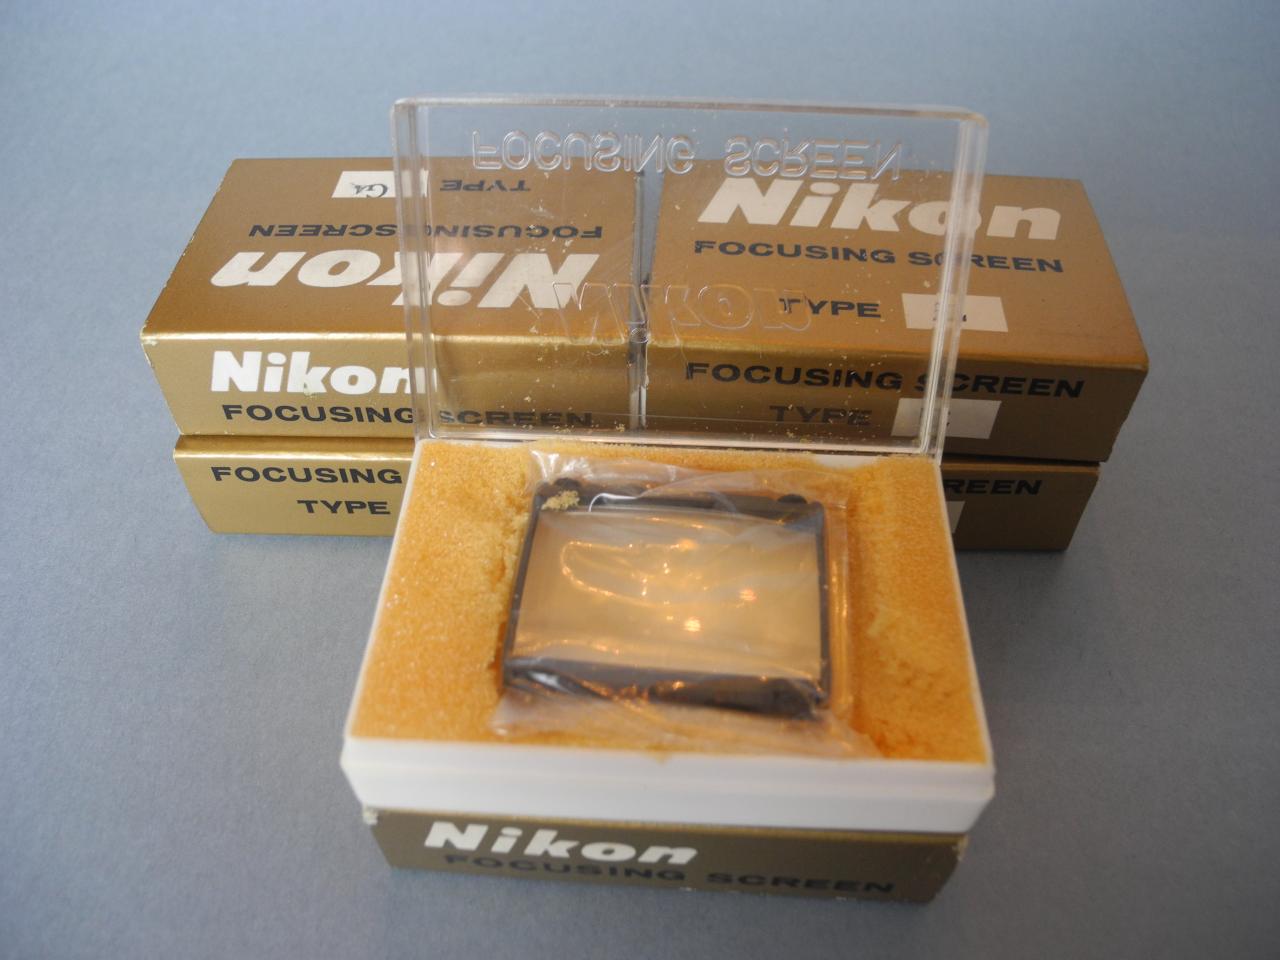 *Nikon verre de vissée tipe G1,G3,G4,E,M pour F2*